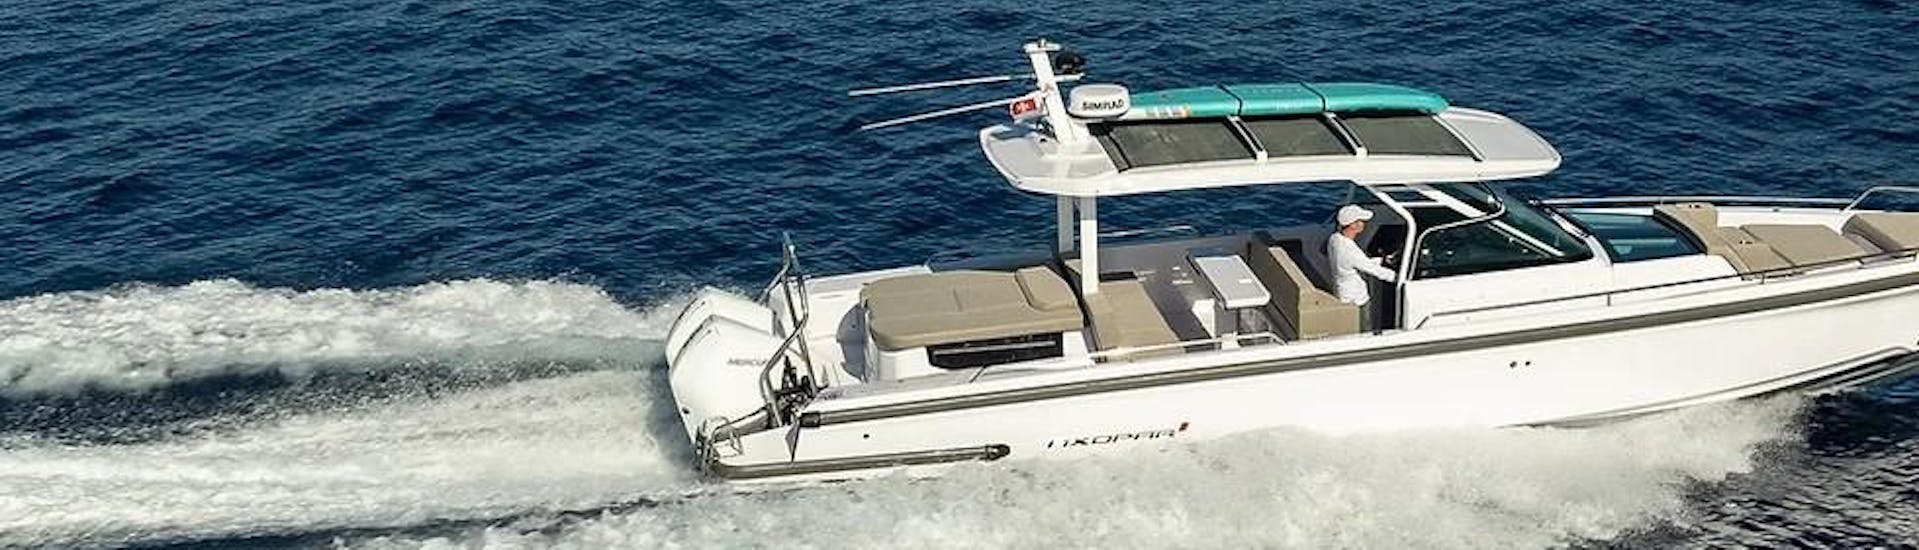 De Axopar 37 Meditterana speedboot van Nautiful op het water. 